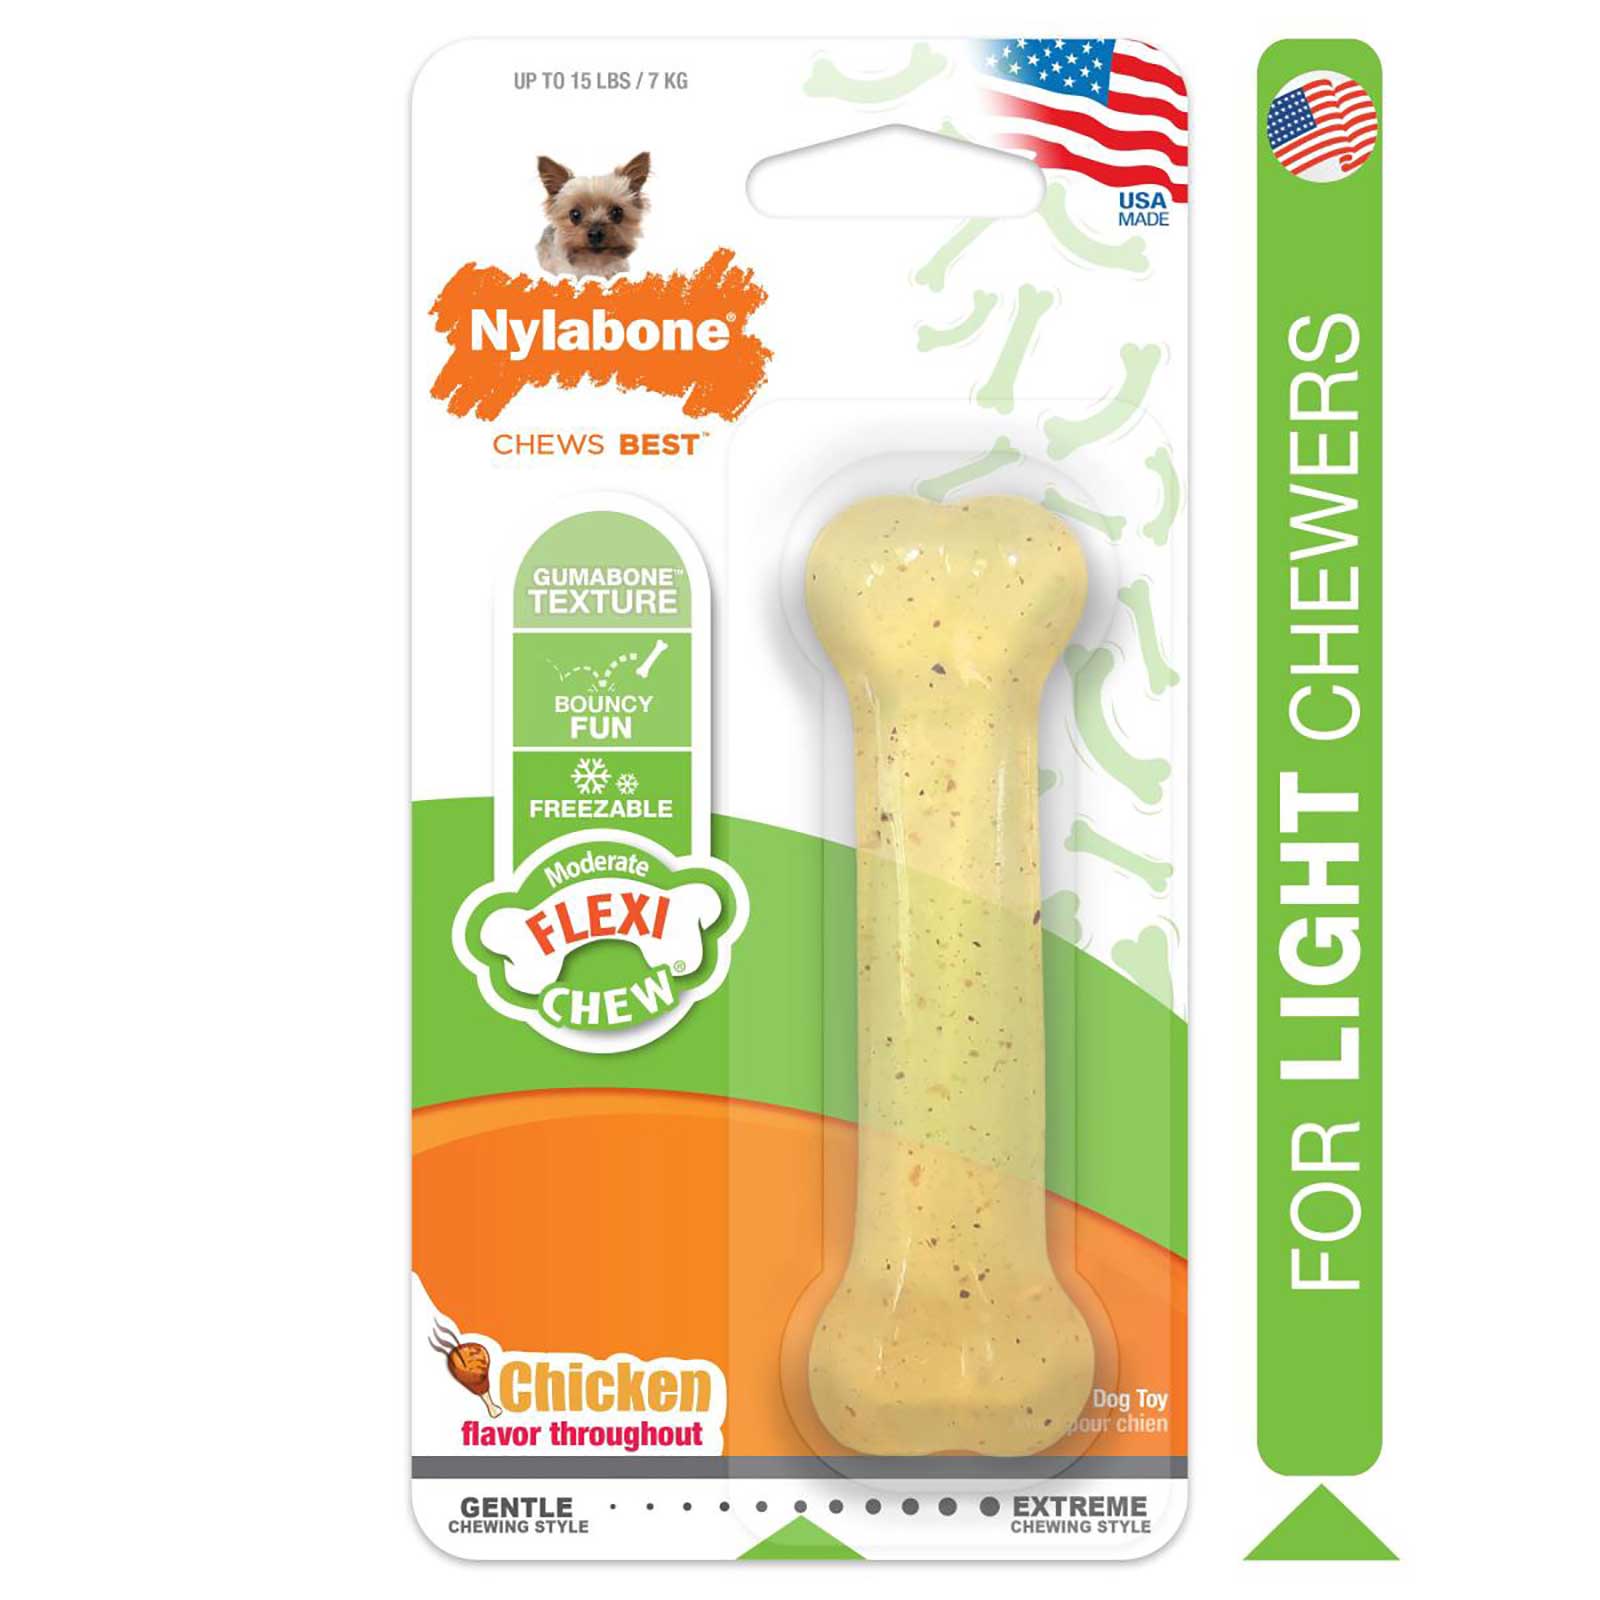 Nylabone Flexichew Chicken Dog Toy